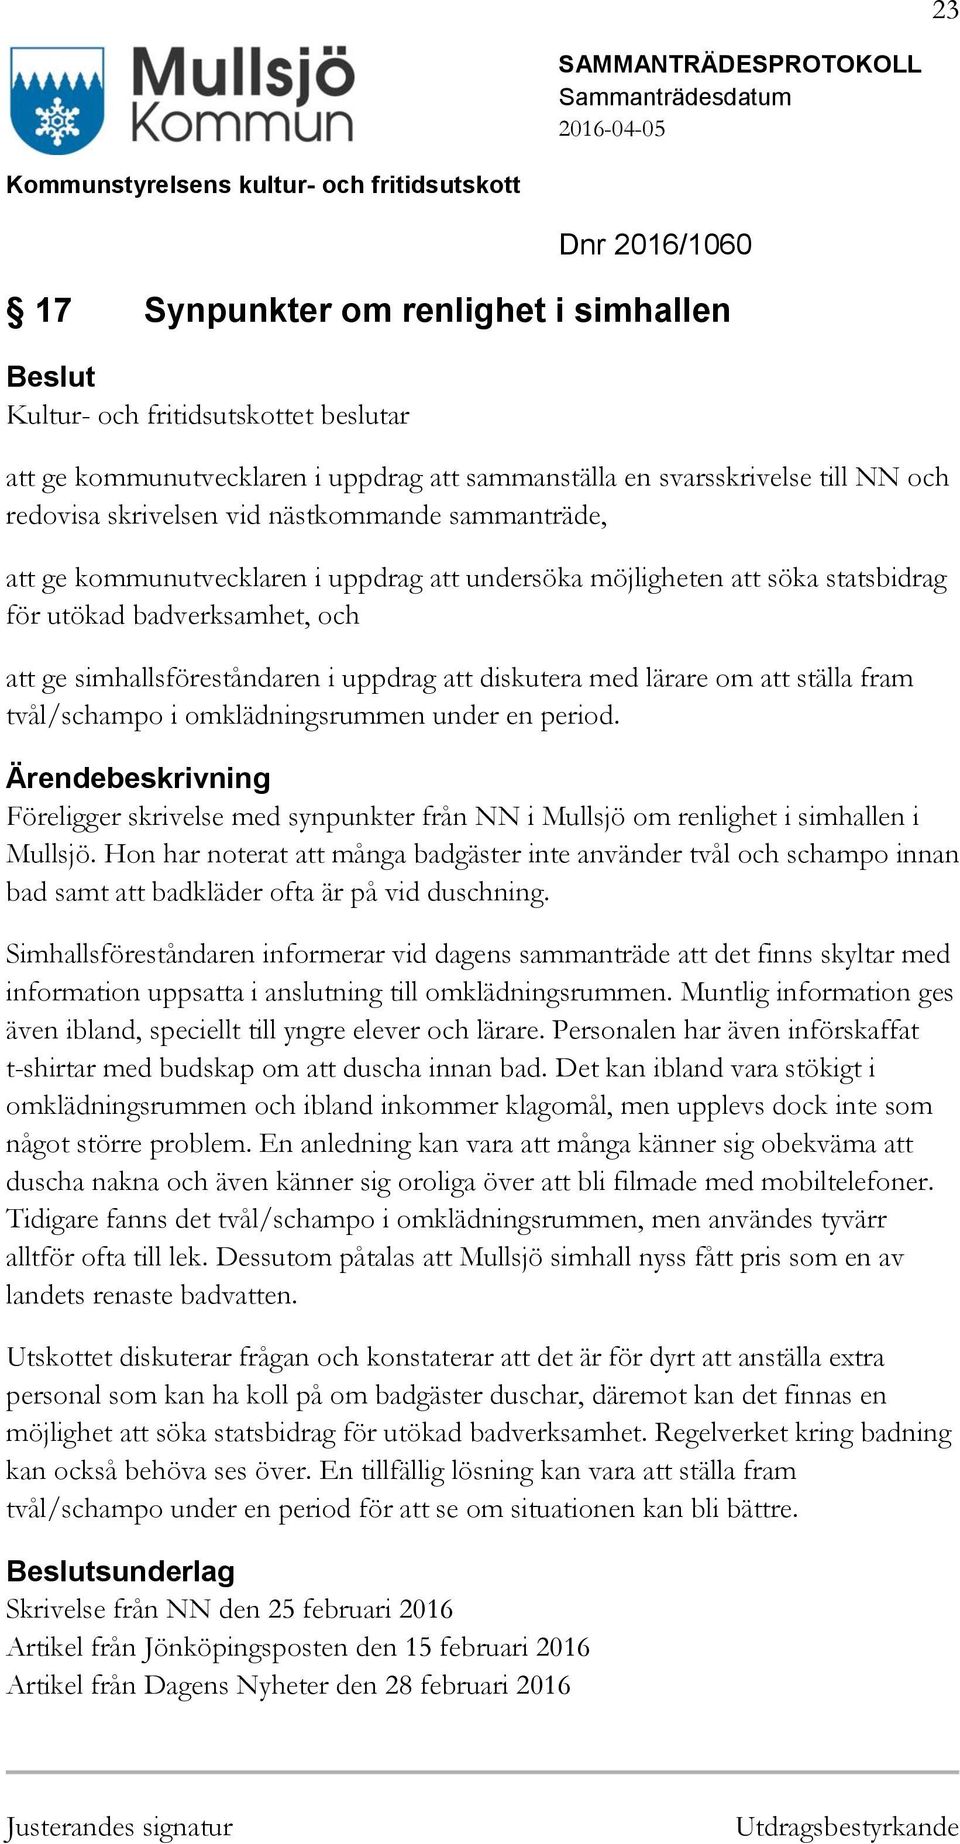 tvål/schampo i omklädningsrummen under en period. Föreligger skrivelse med synpunkter från NN i Mullsjö om renlighet i simhallen i Mullsjö.